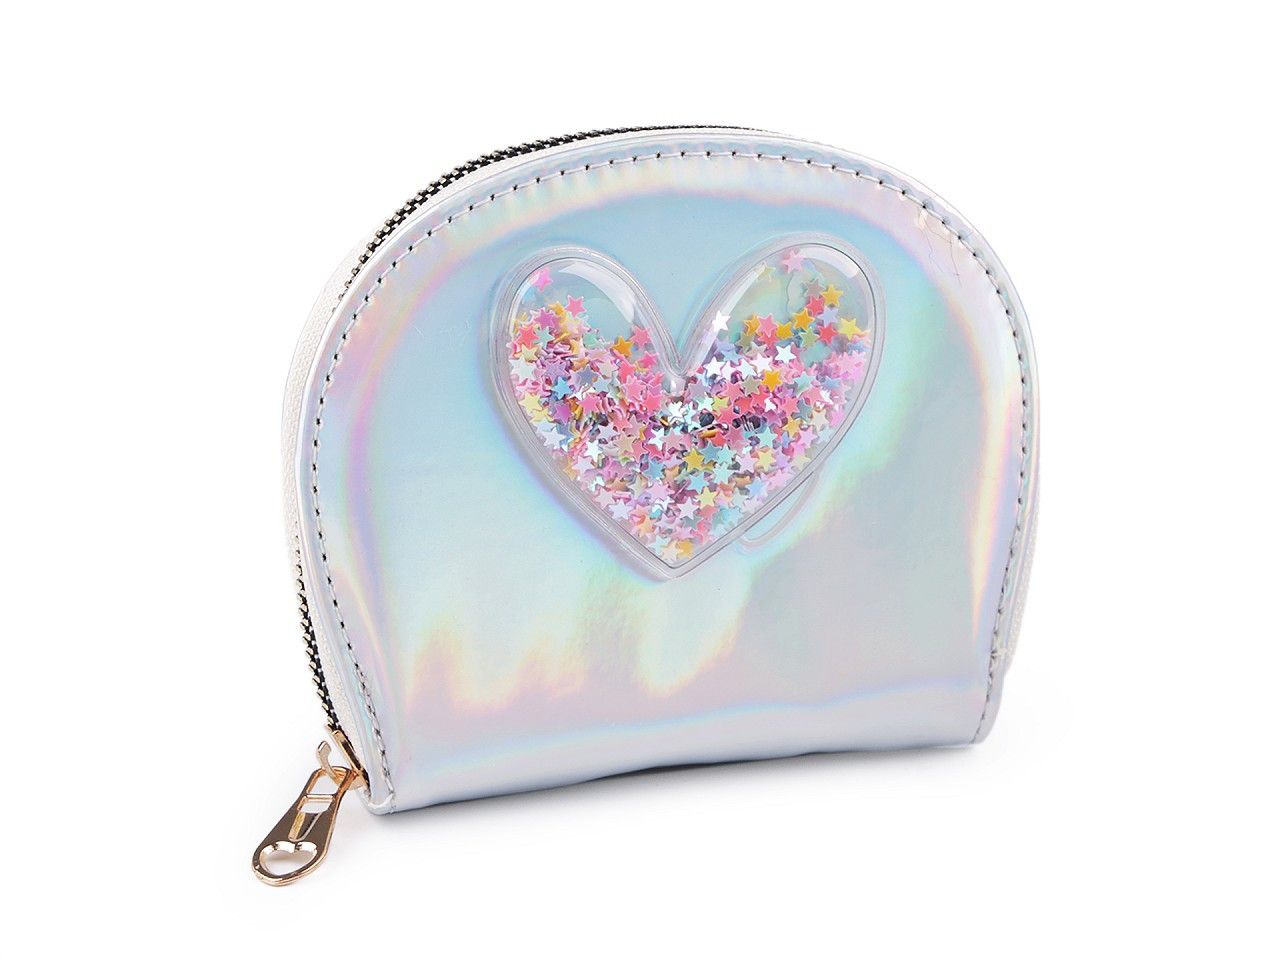 Dívčí peněženka srdce s přesýpacími flitry 10,5x13 cm, barva 1 stříbrná světlá